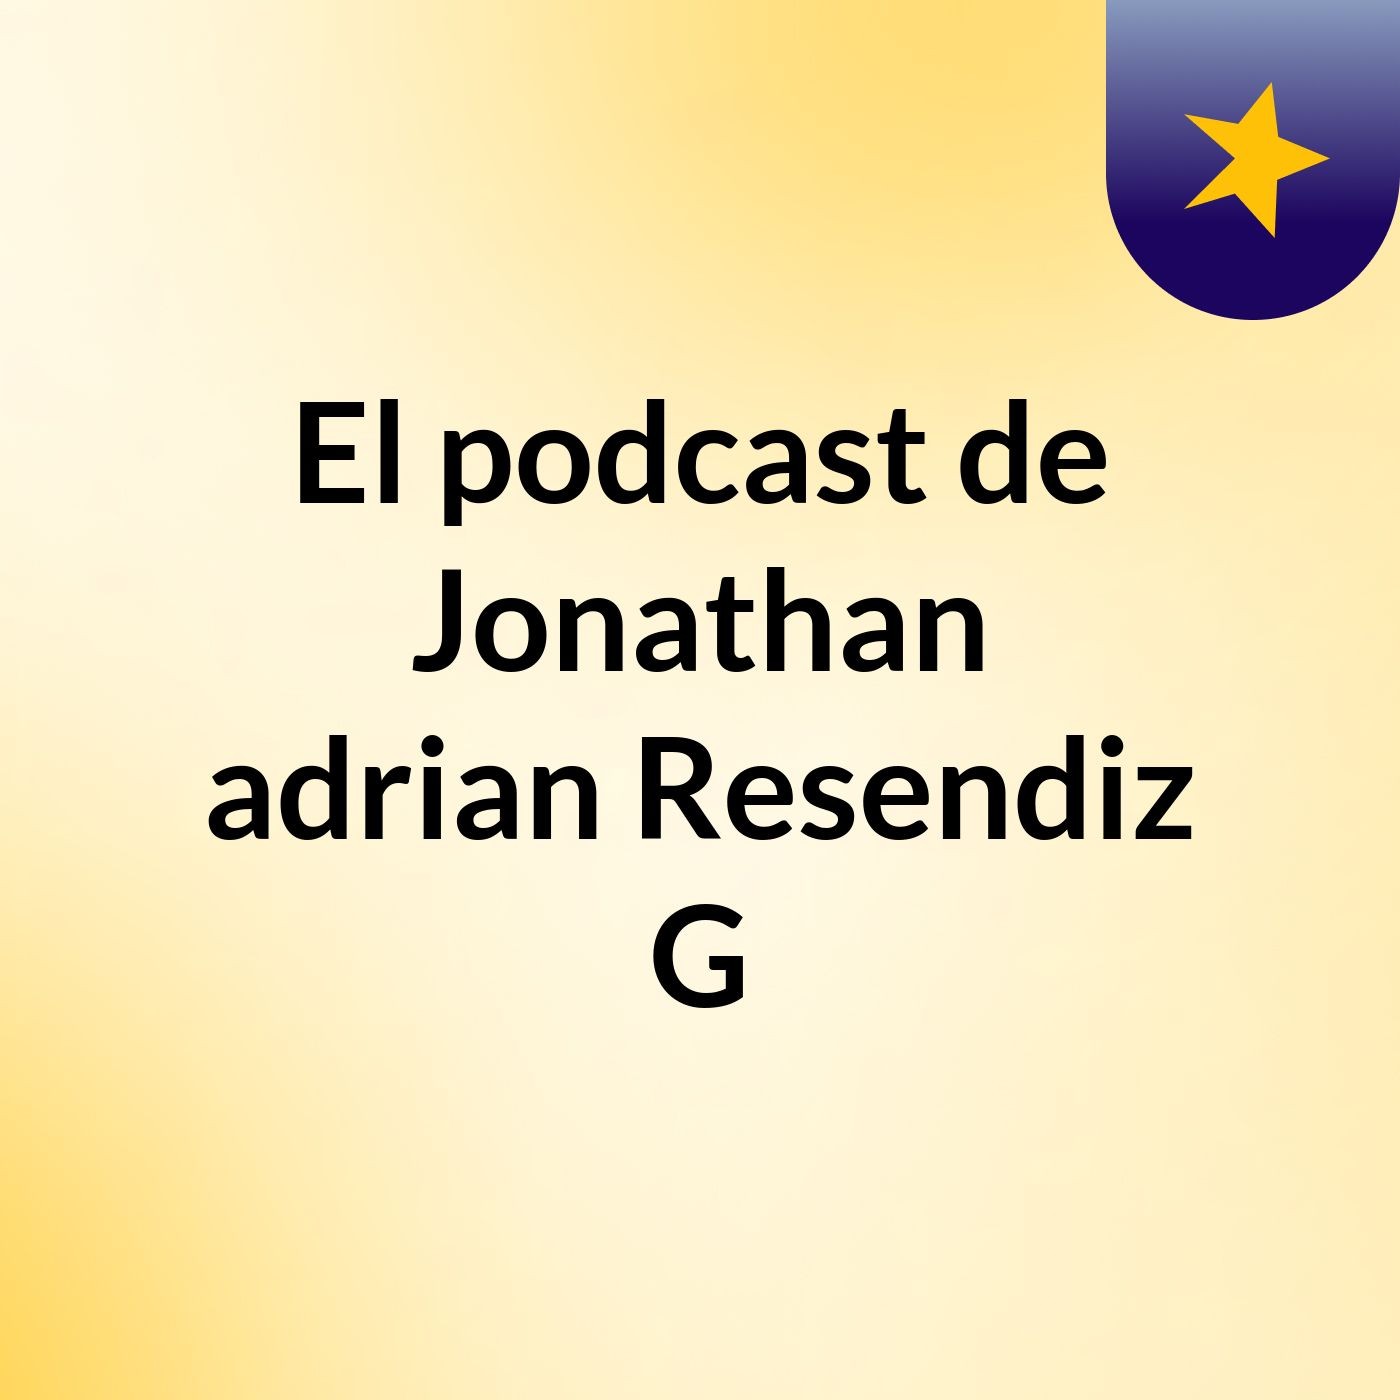 El podcast de Jonathan adrian Resendiz G